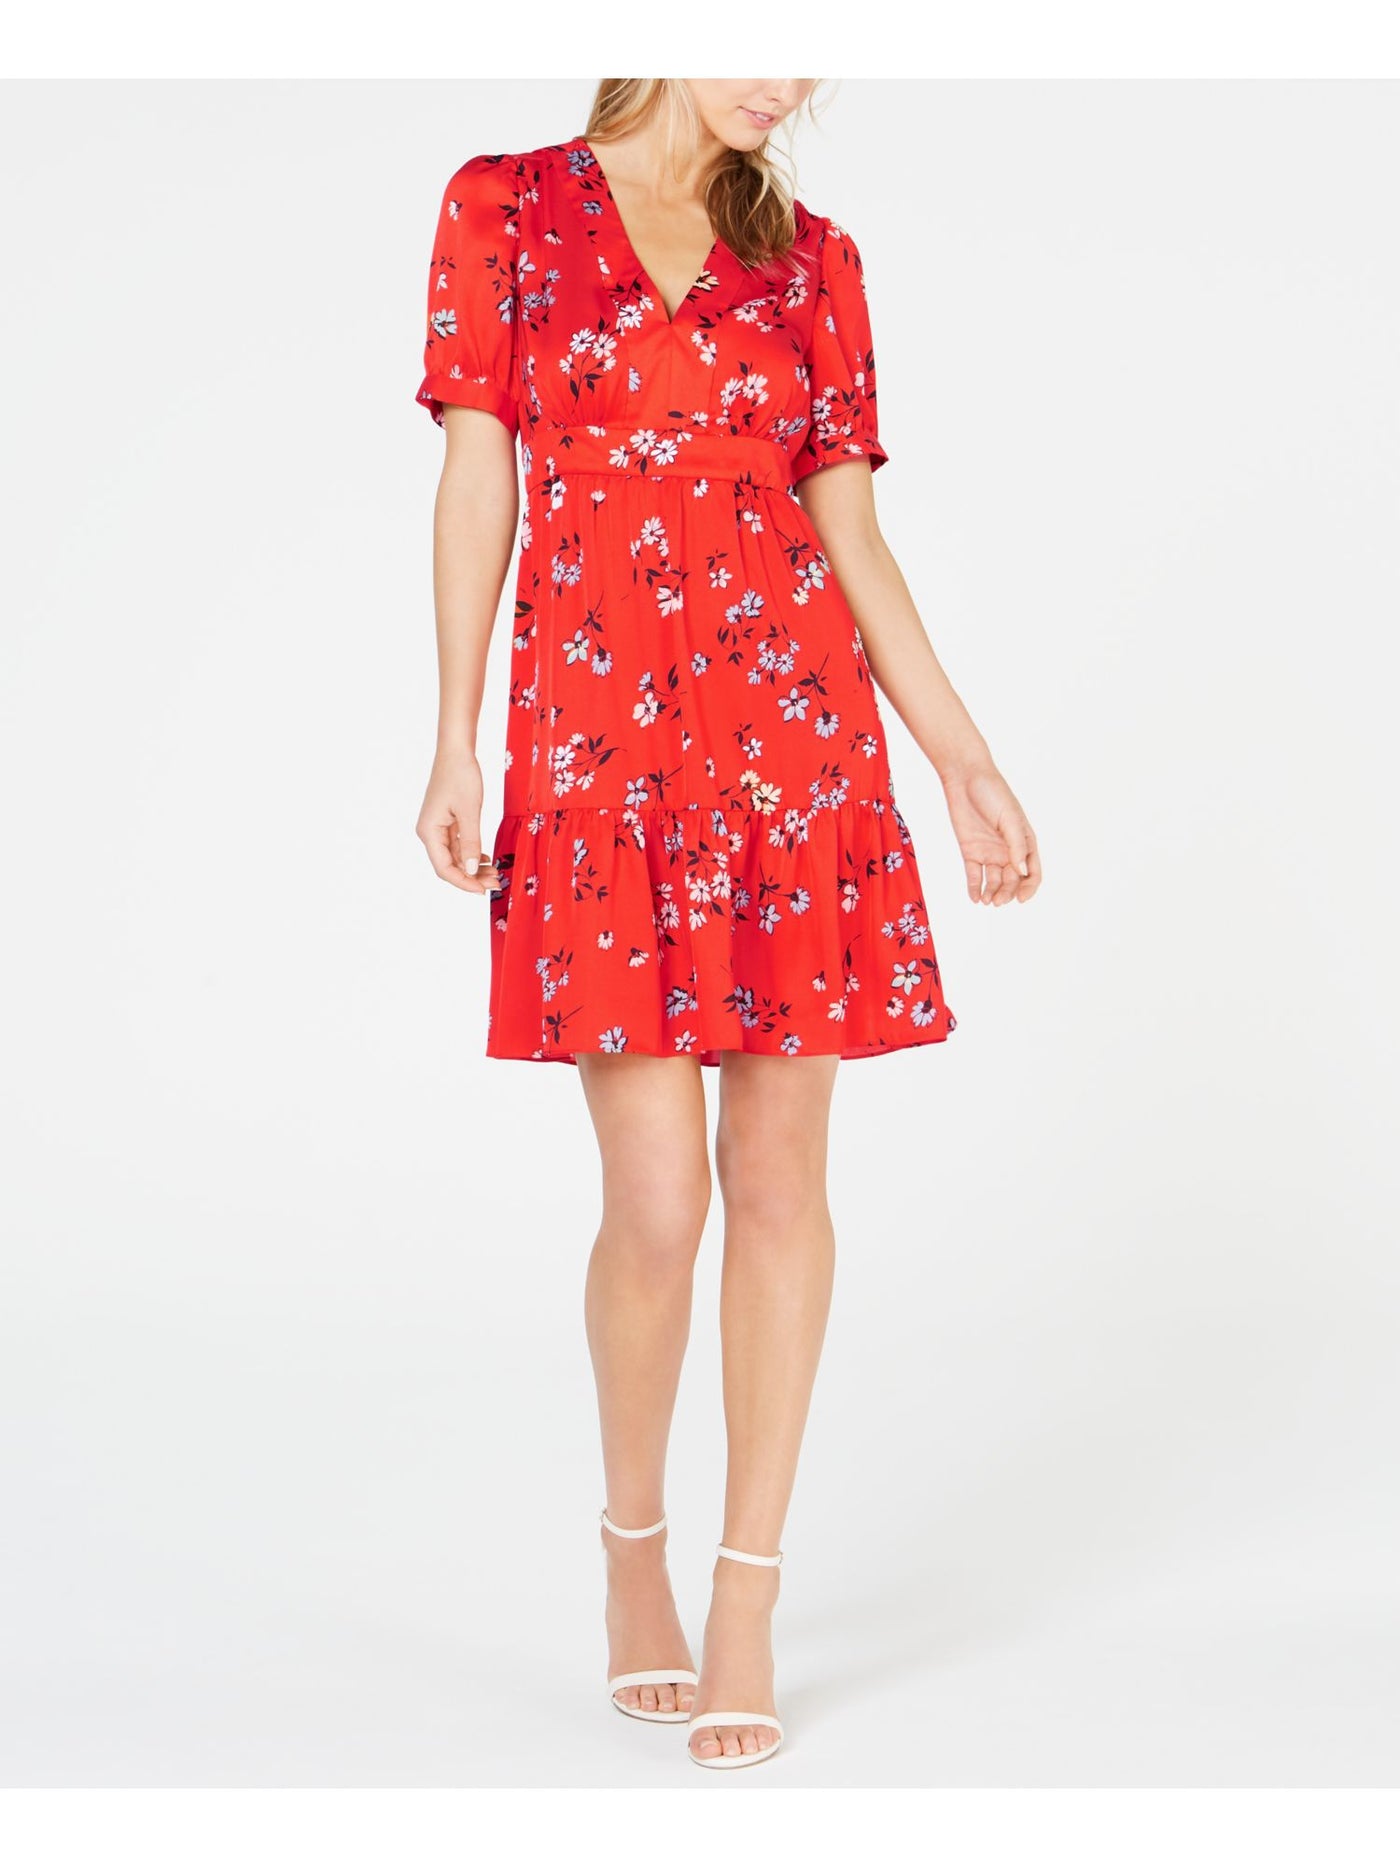 JILL STUART Womens Red Ruffled Floral V Neck Mini Shift Dress Size: 2